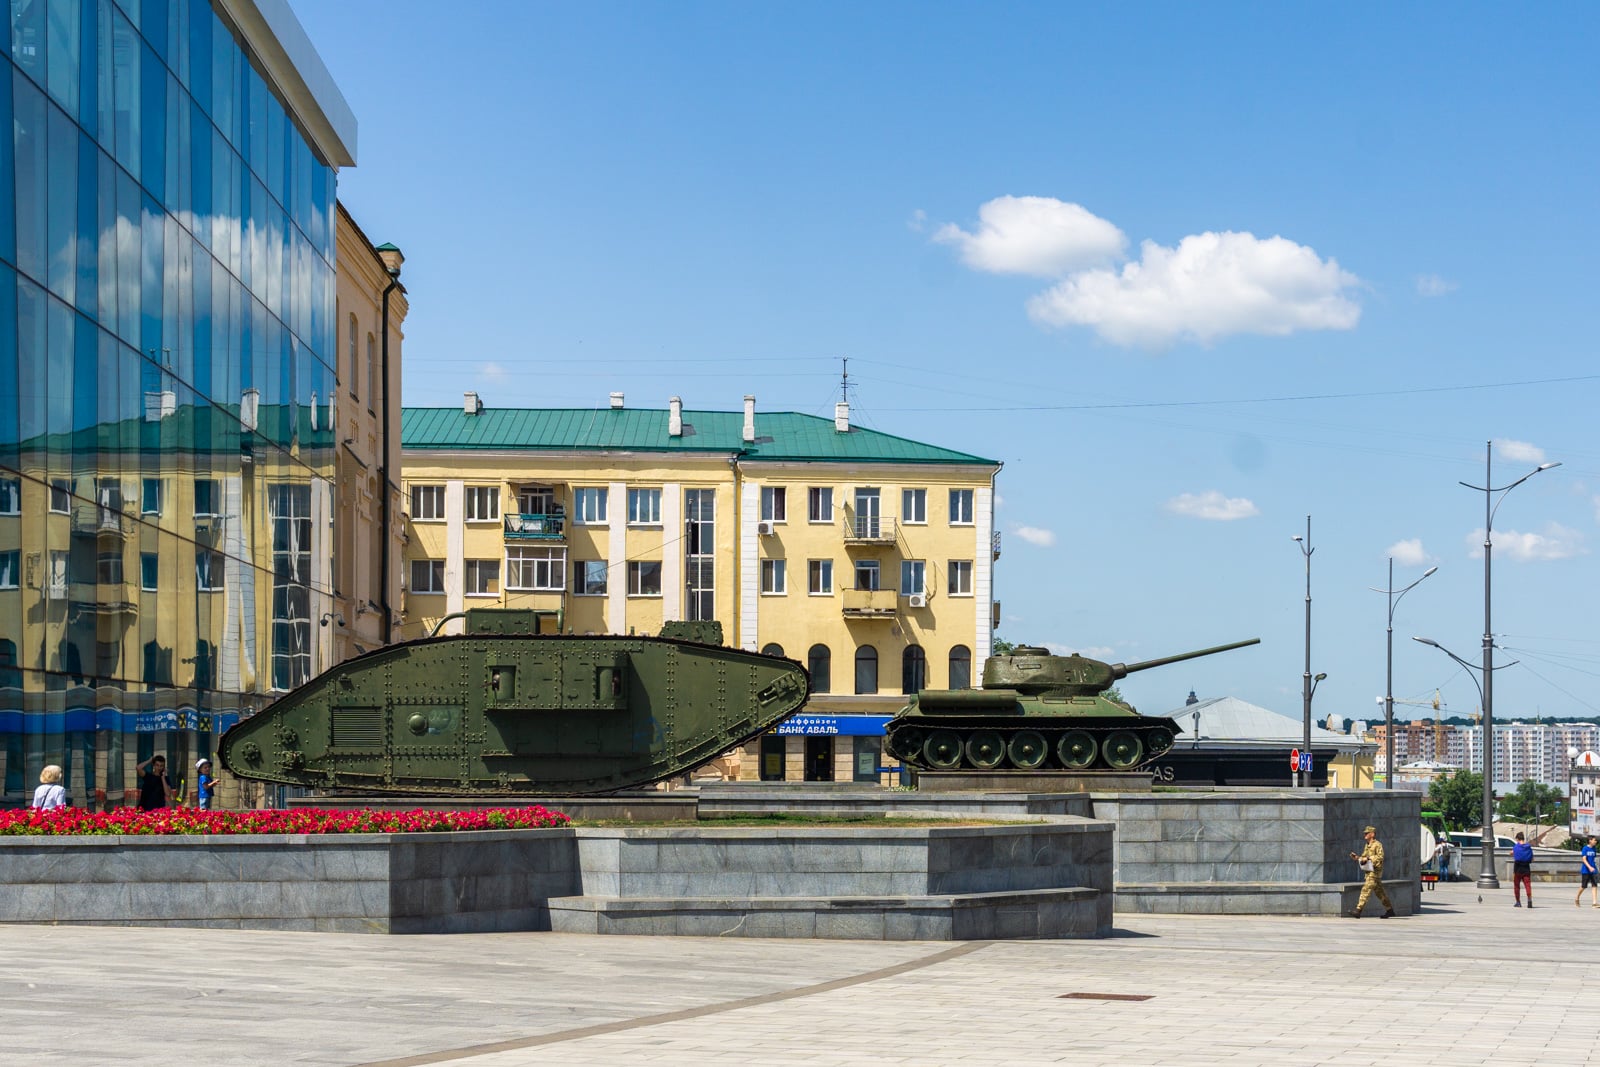 Tanks in Kharkiv, Ukraine